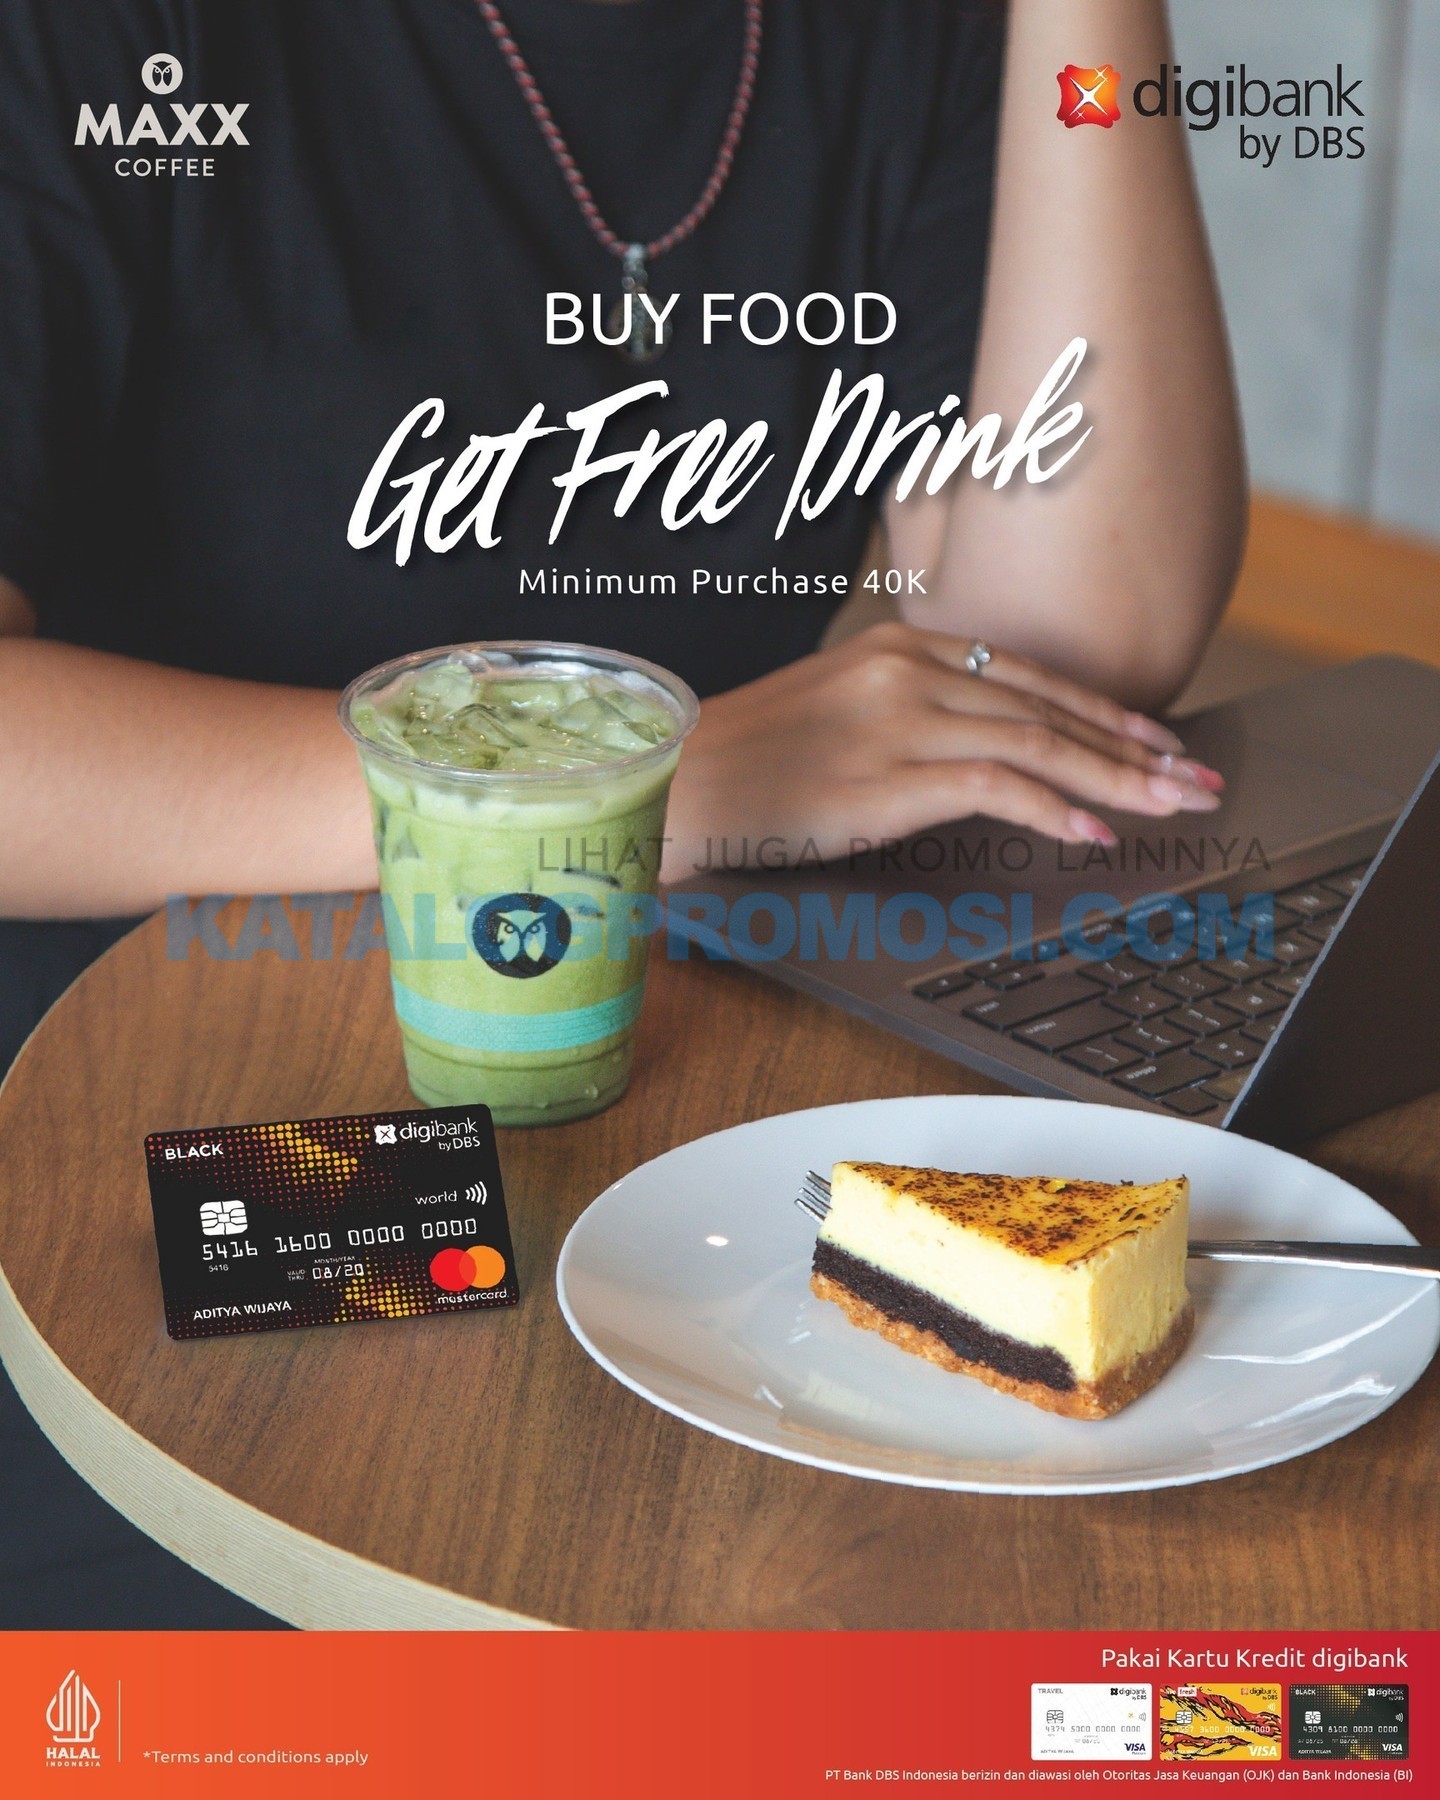 Promo MAXX COFFEE GRATIS MINUMAN dengan Kartu Kredit Digibank by DBS